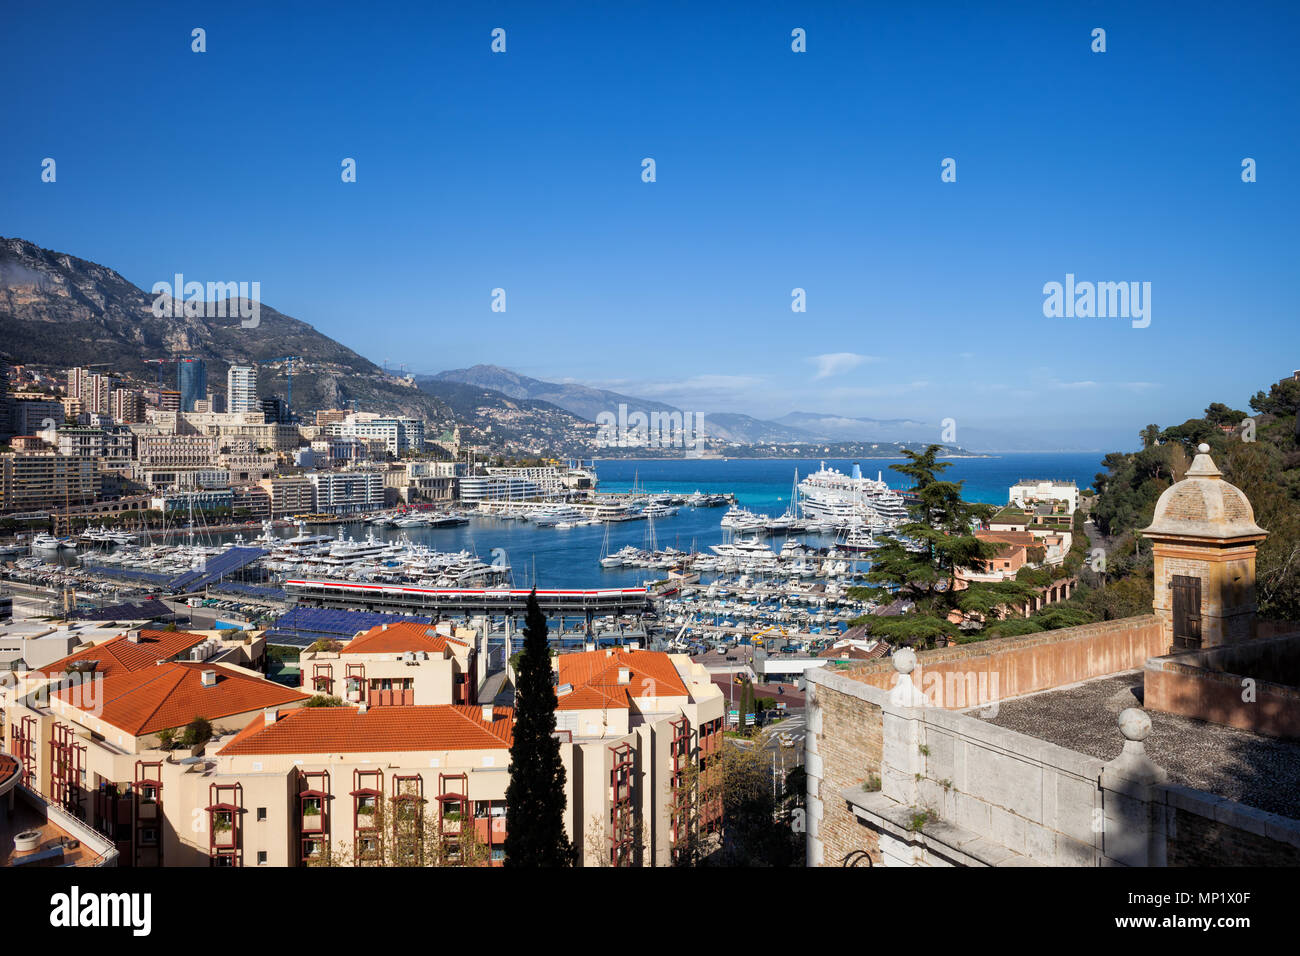 Monaco principality cityscape, view to Monte Carlo and Port Hercule on Mediterranean Sea Stock Photo